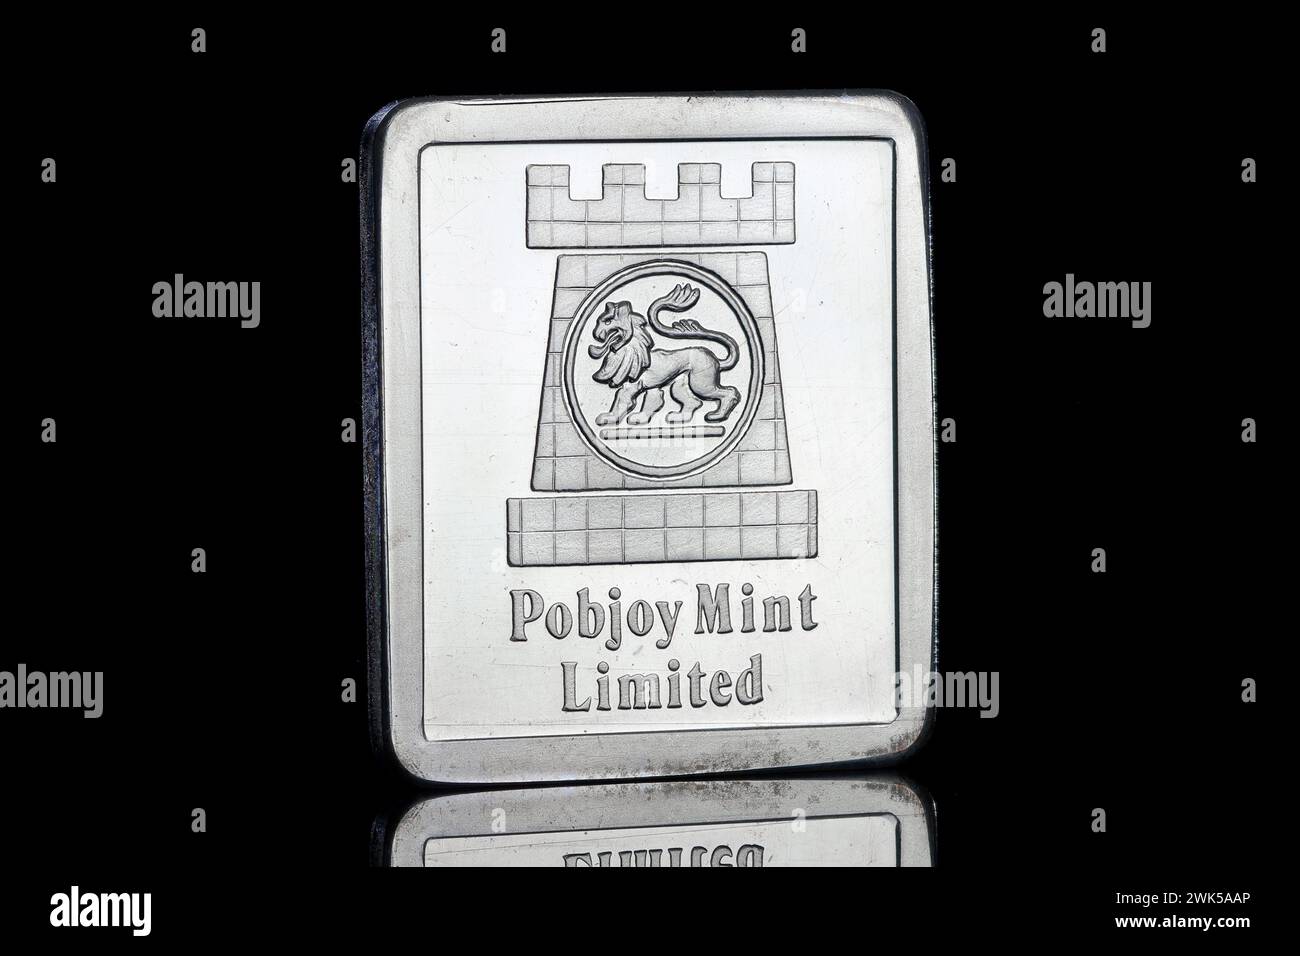 Un lingot argenté portant le logo de la marque Pobjoy Mint Limited. Le fabricant de pièces de monnaie a maintenant cessé de commercer après 58 ans. Banque D'Images